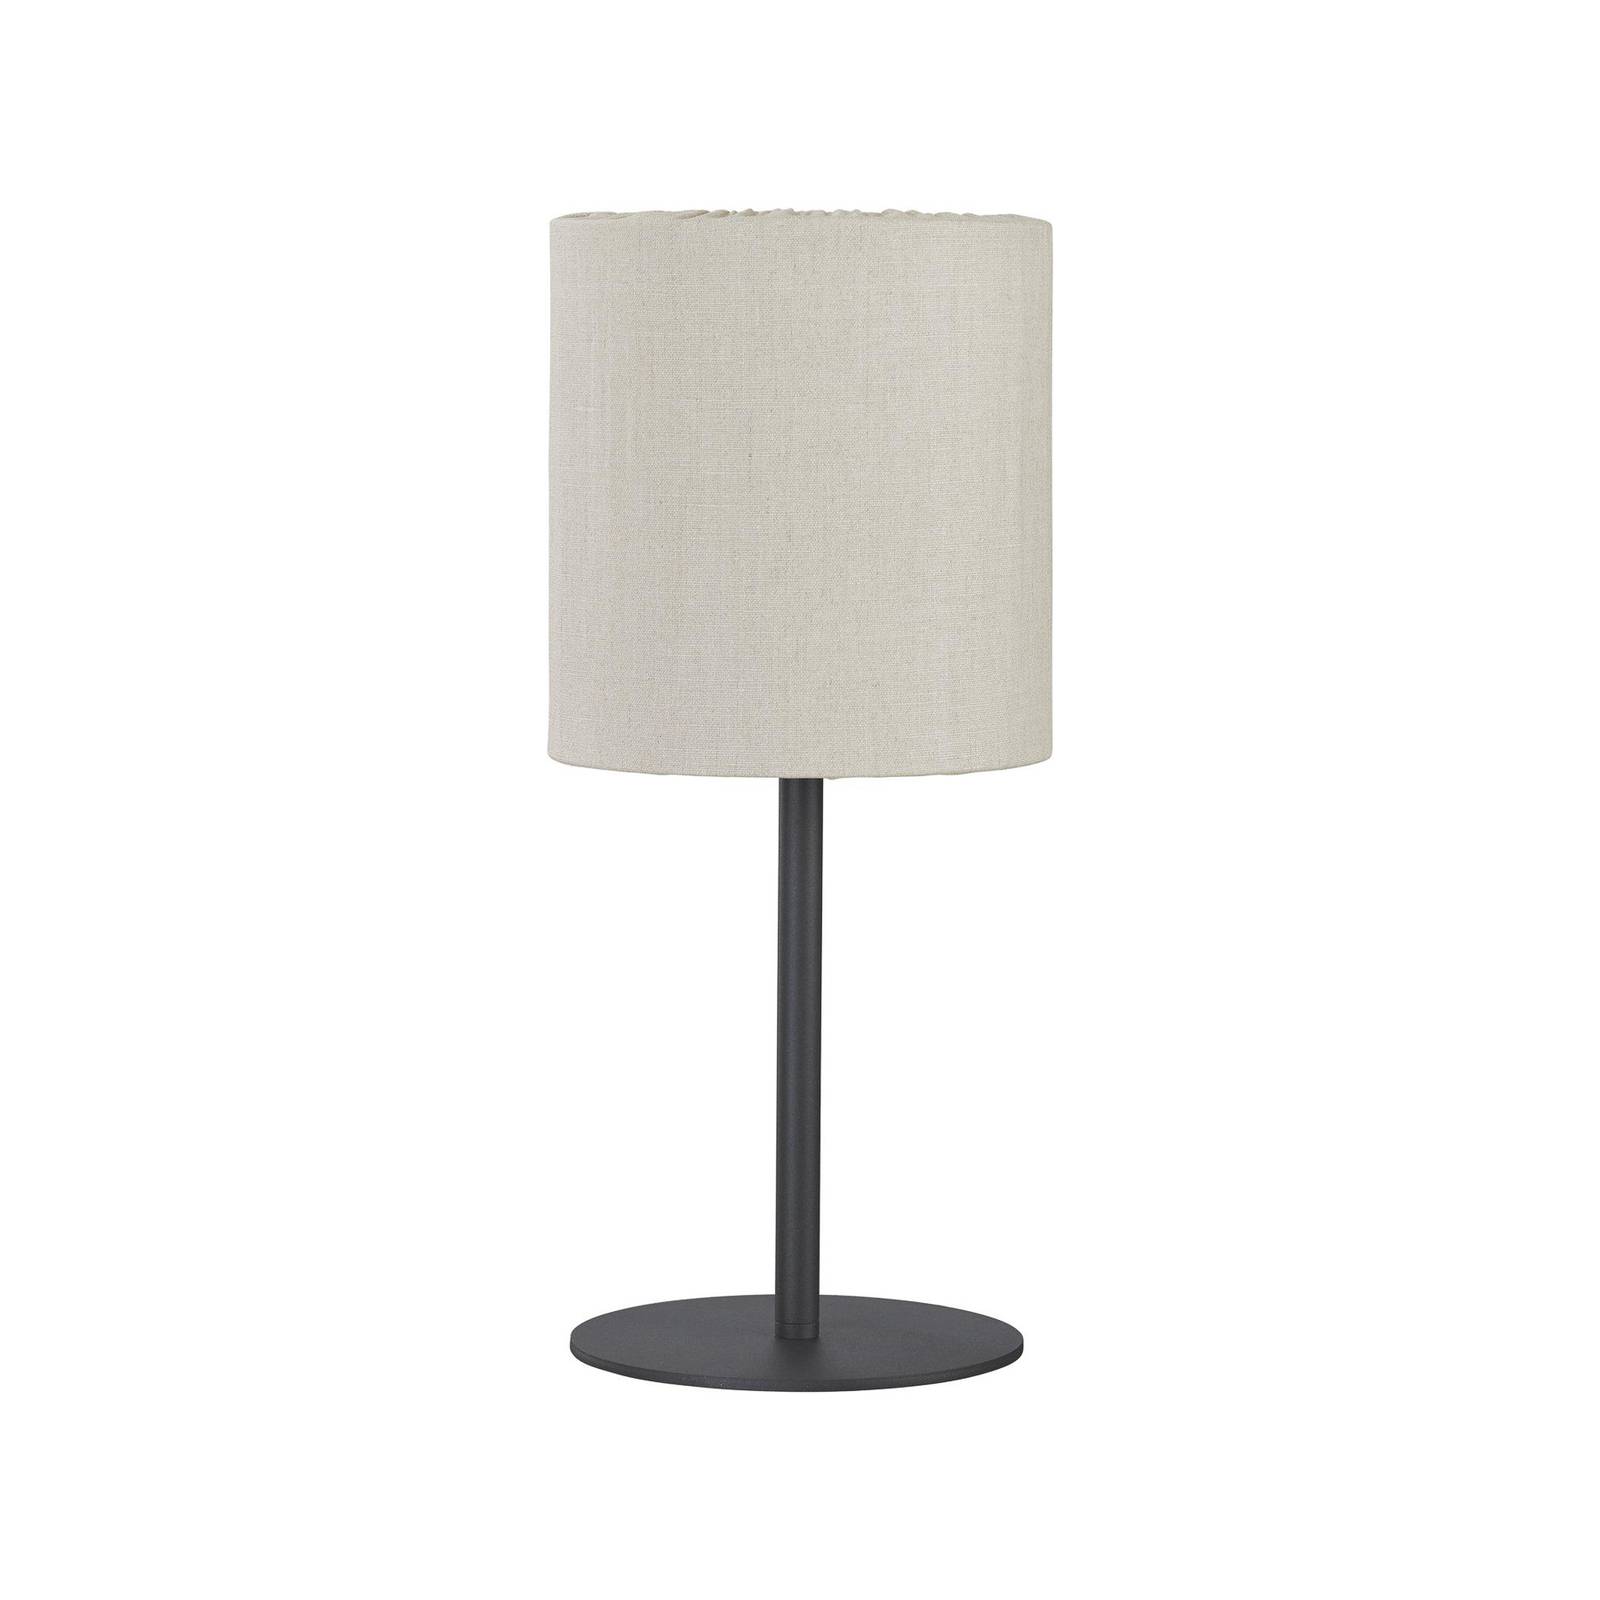 Image of PR Home lampada da tavolo per esterni Agnar, grigio scuro / beige, 57 cm